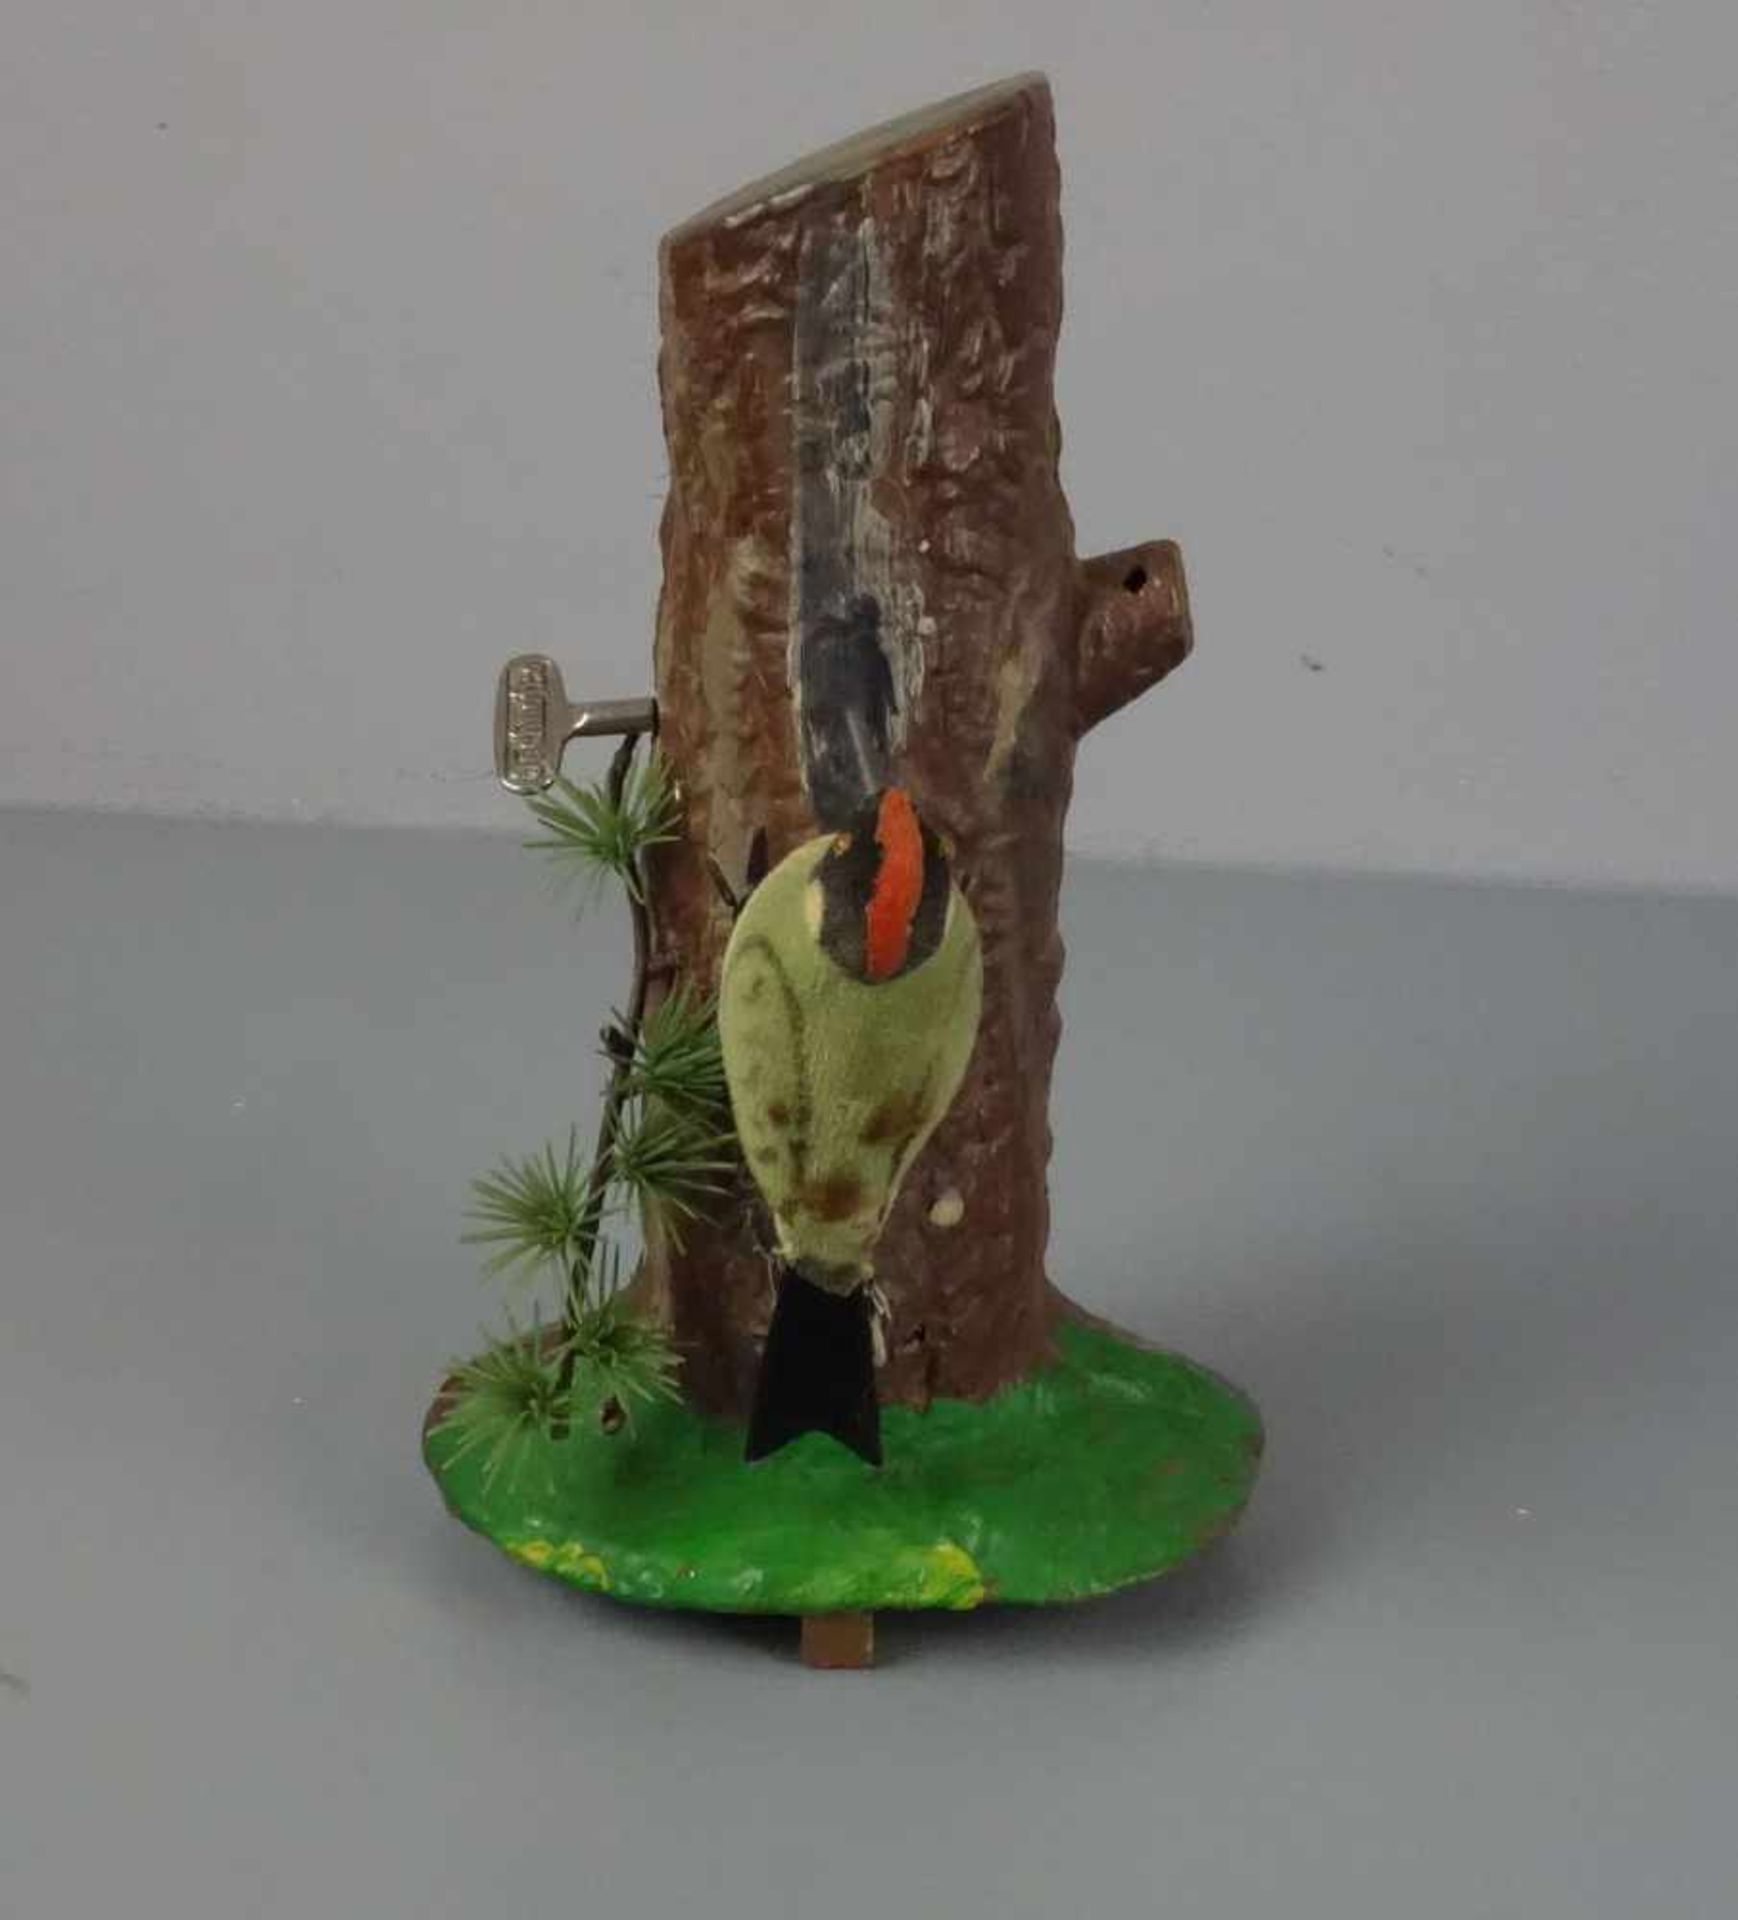 SPIELZEUG: Specht an einem Baumstamm / toy woodpecker, Mitte 20. Jh., Manufaktur Carl Max, - Bild 3 aus 3